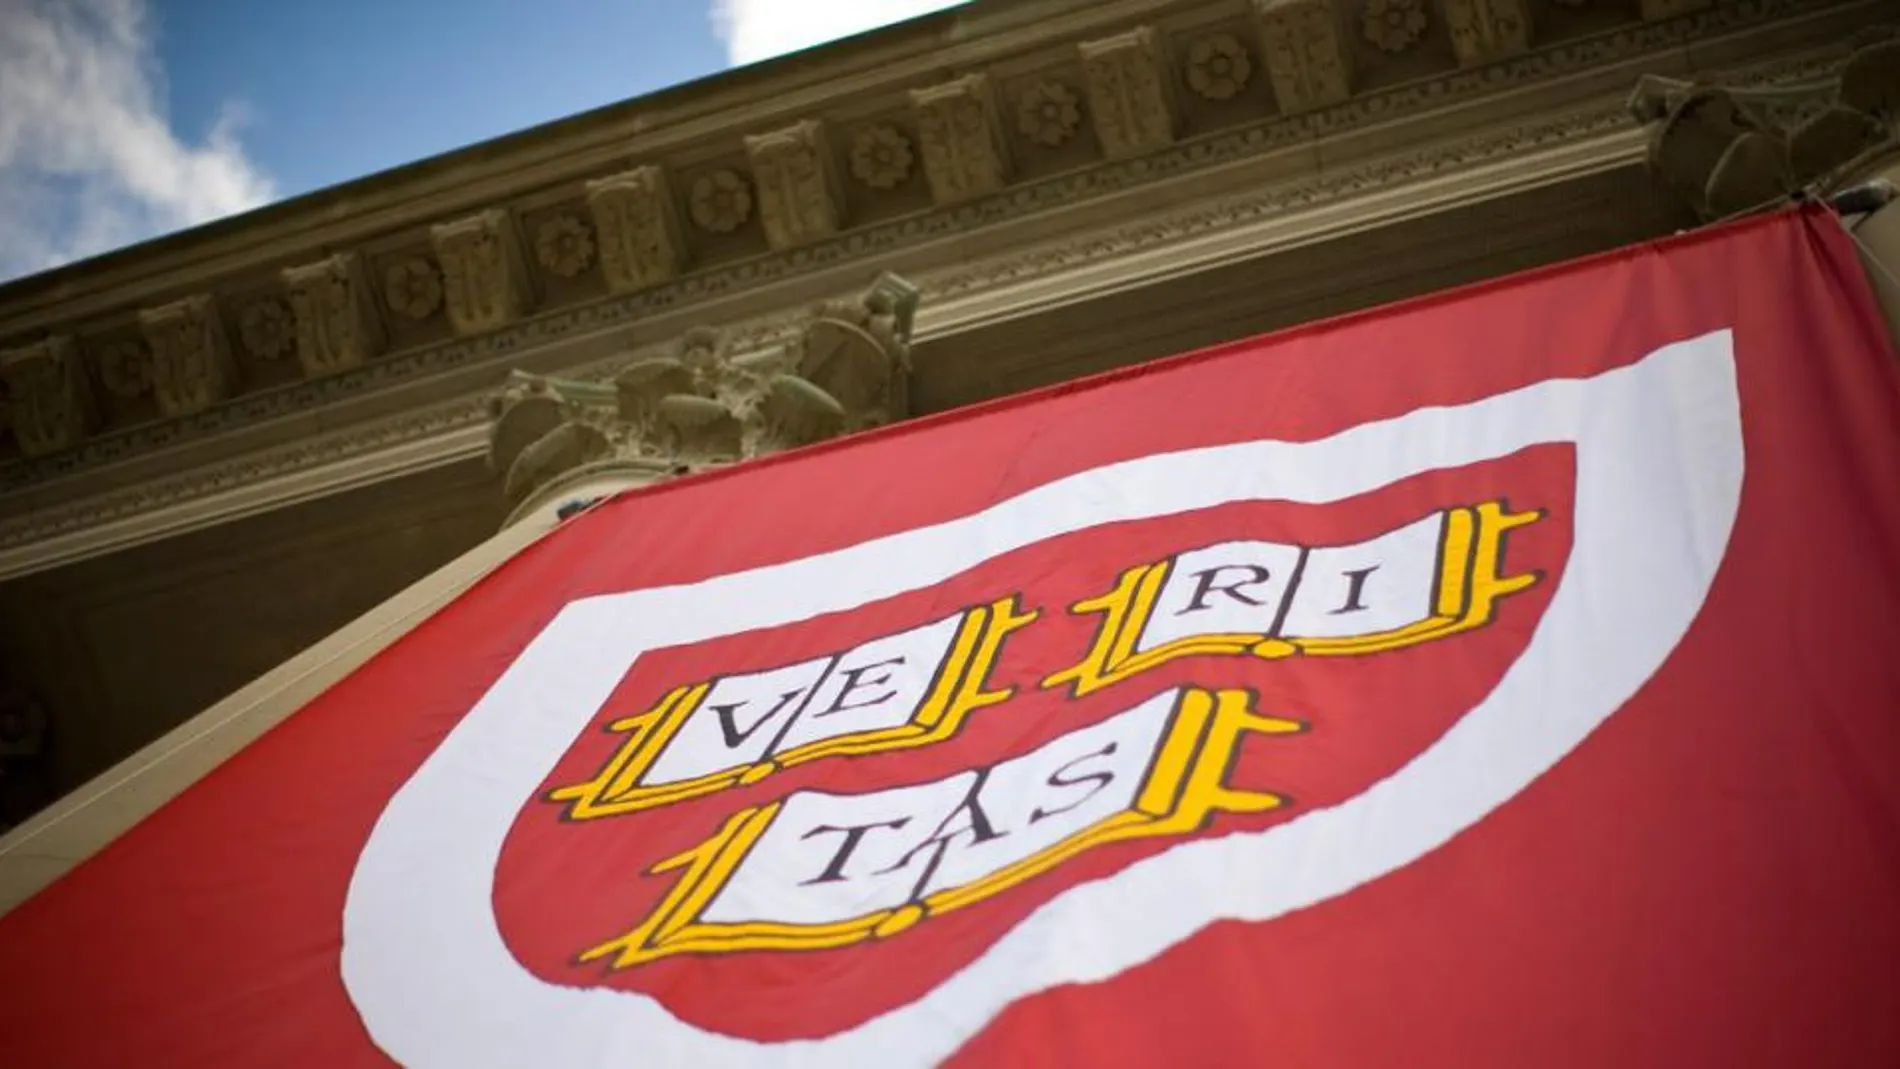 Escudo de armas de la Universidad de Harvard